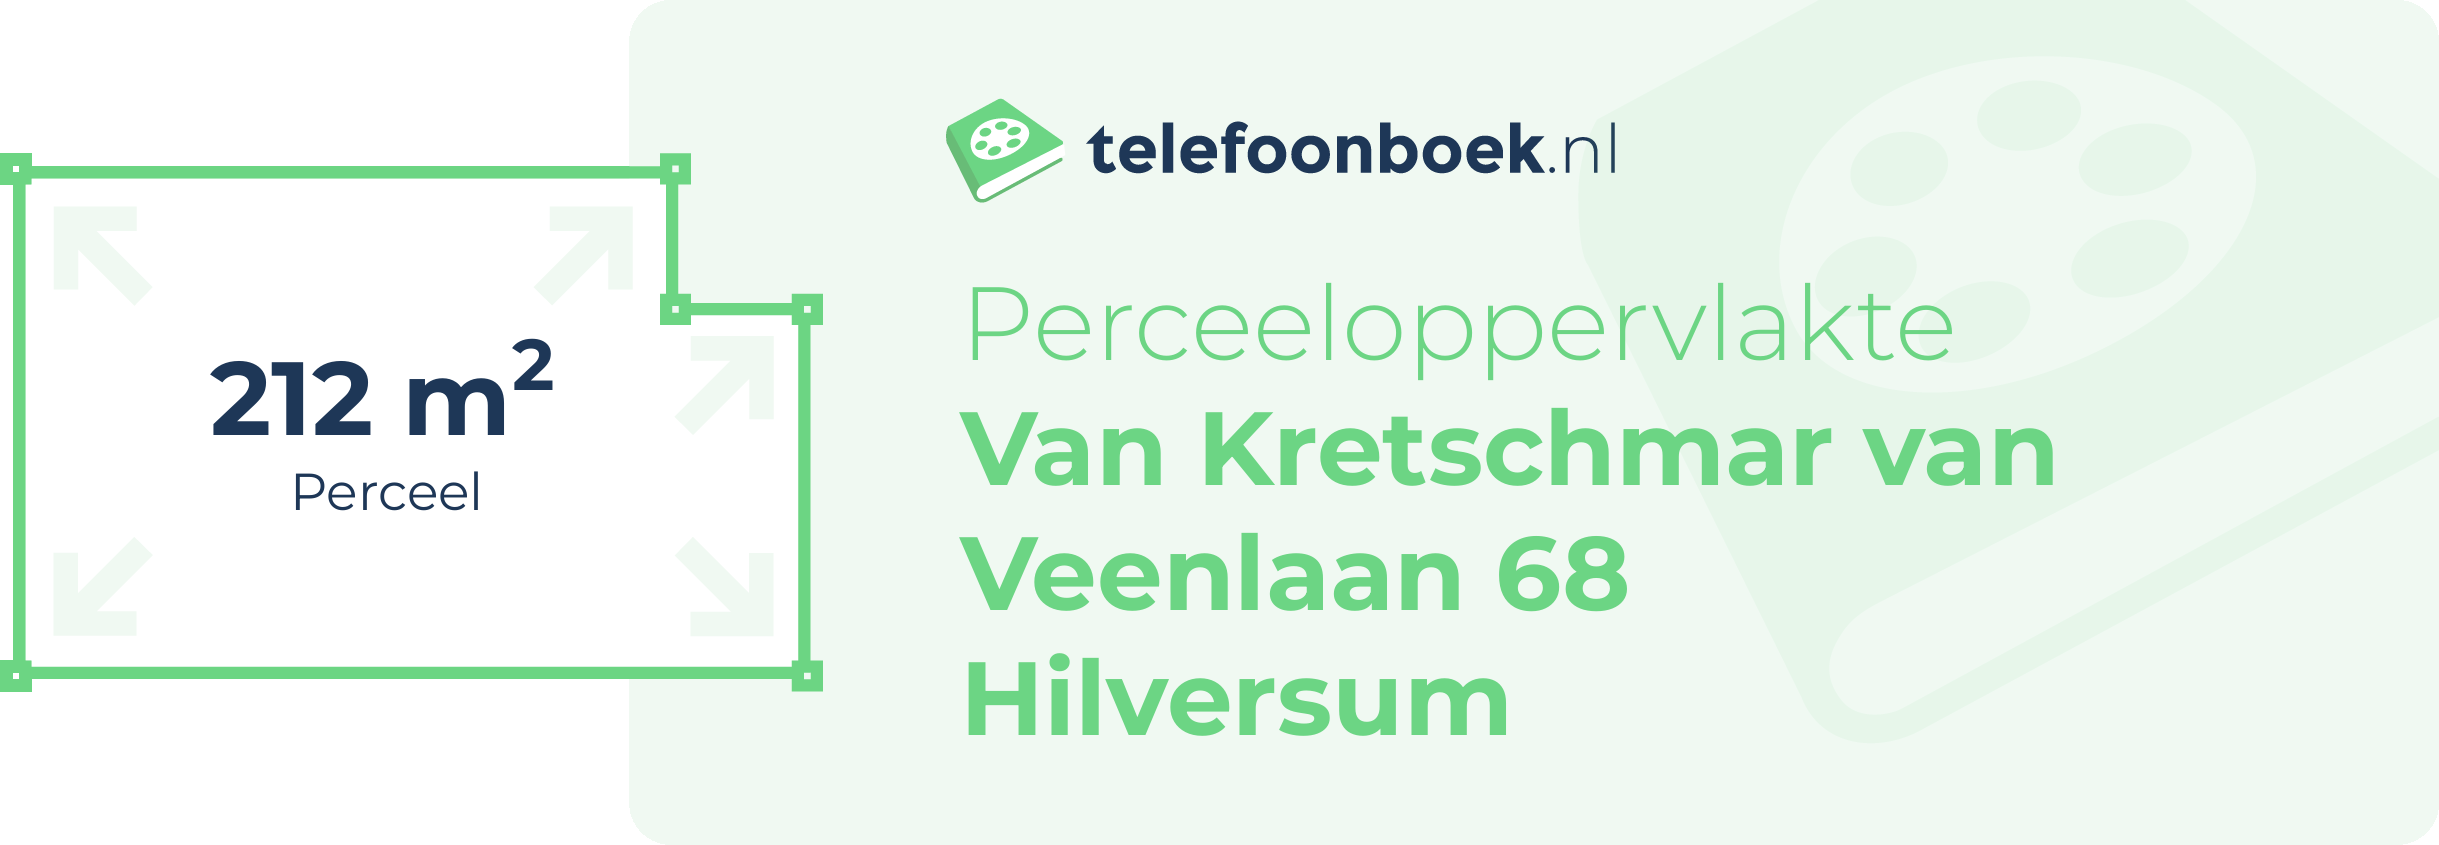 Perceeloppervlakte Van Kretschmar Van Veenlaan 68 Hilversum